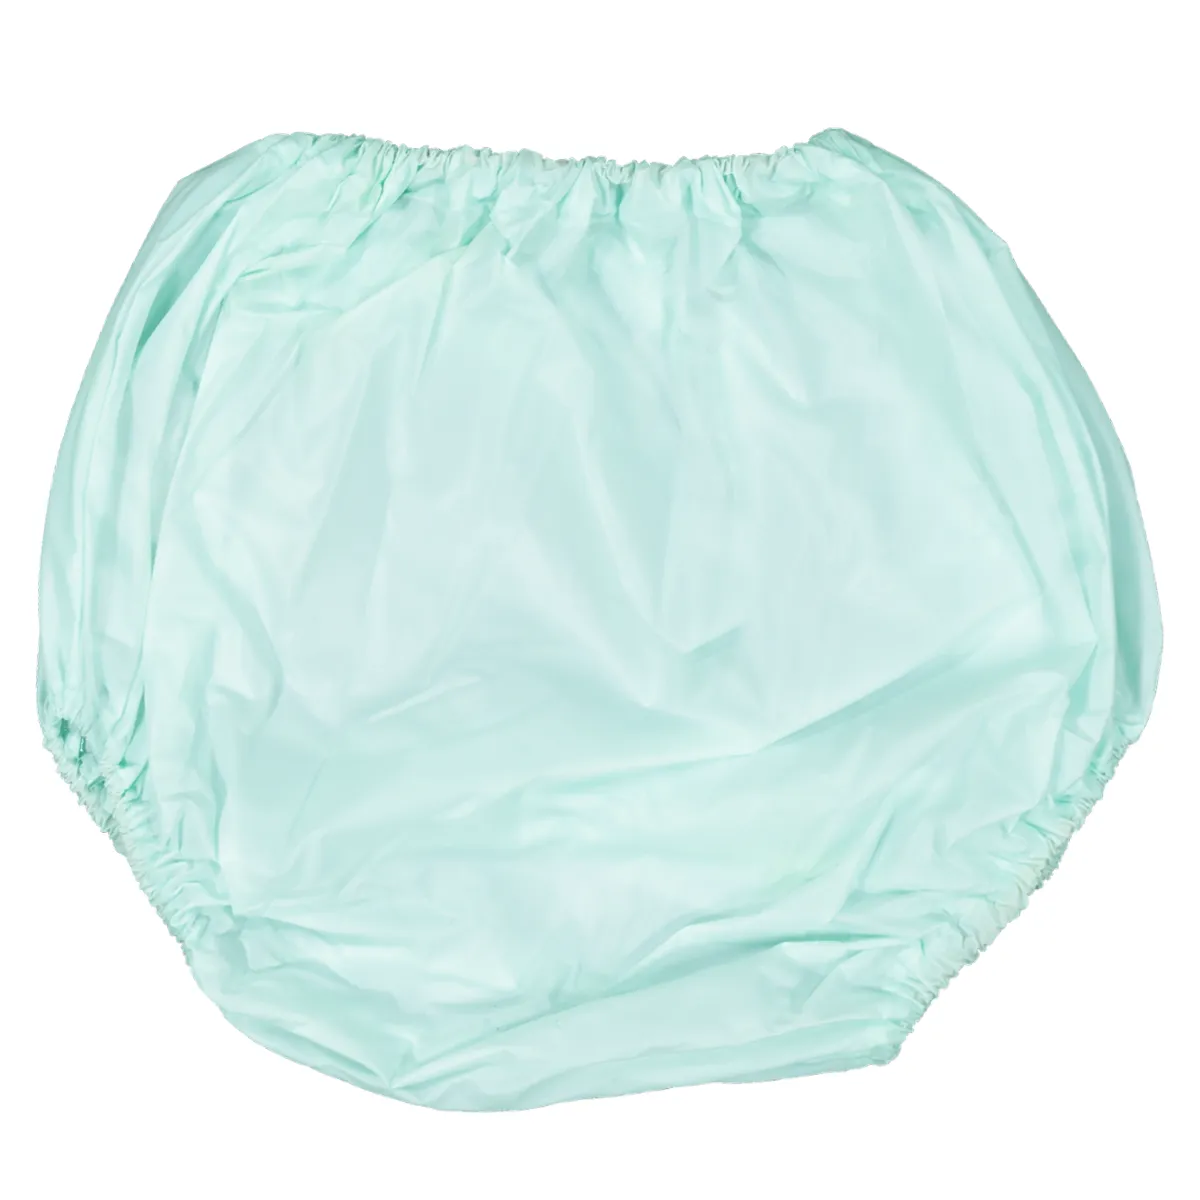 BABYTOTZ Reusable PVC Elastic Baby Diaper Waterproof Plastic